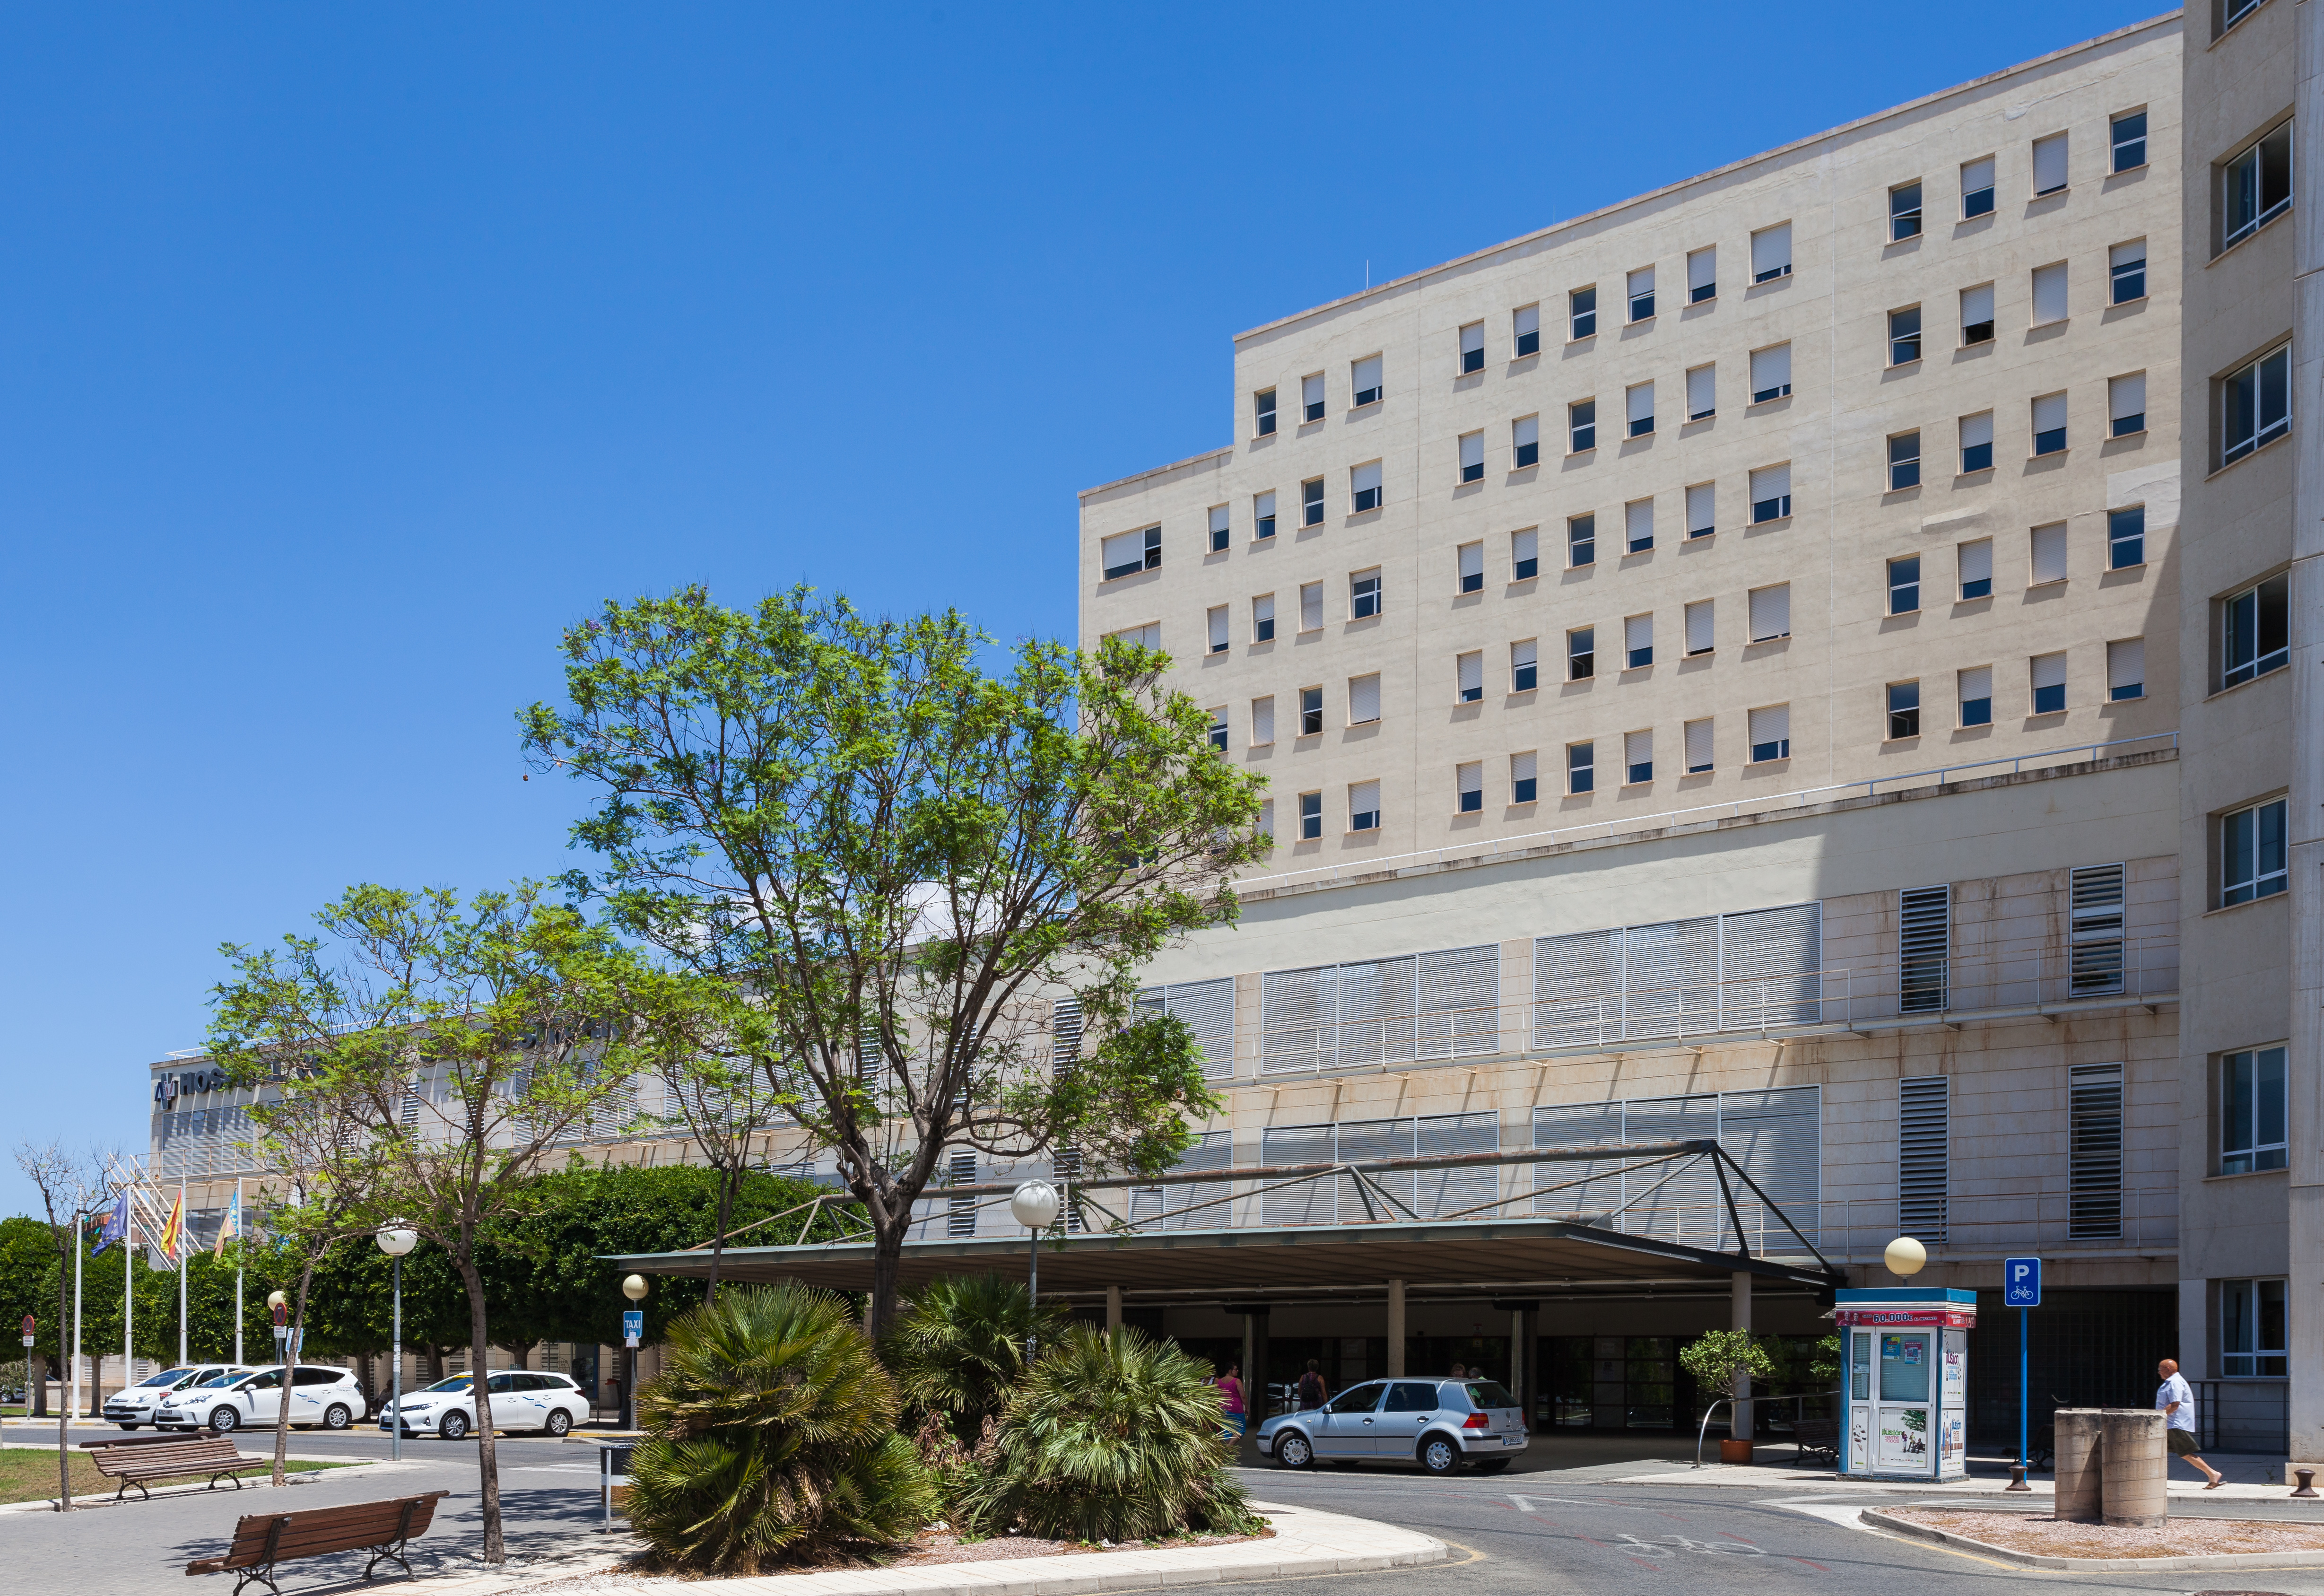 Hospital General Universitario, Alicante, España, 2014-07-04, DD 20